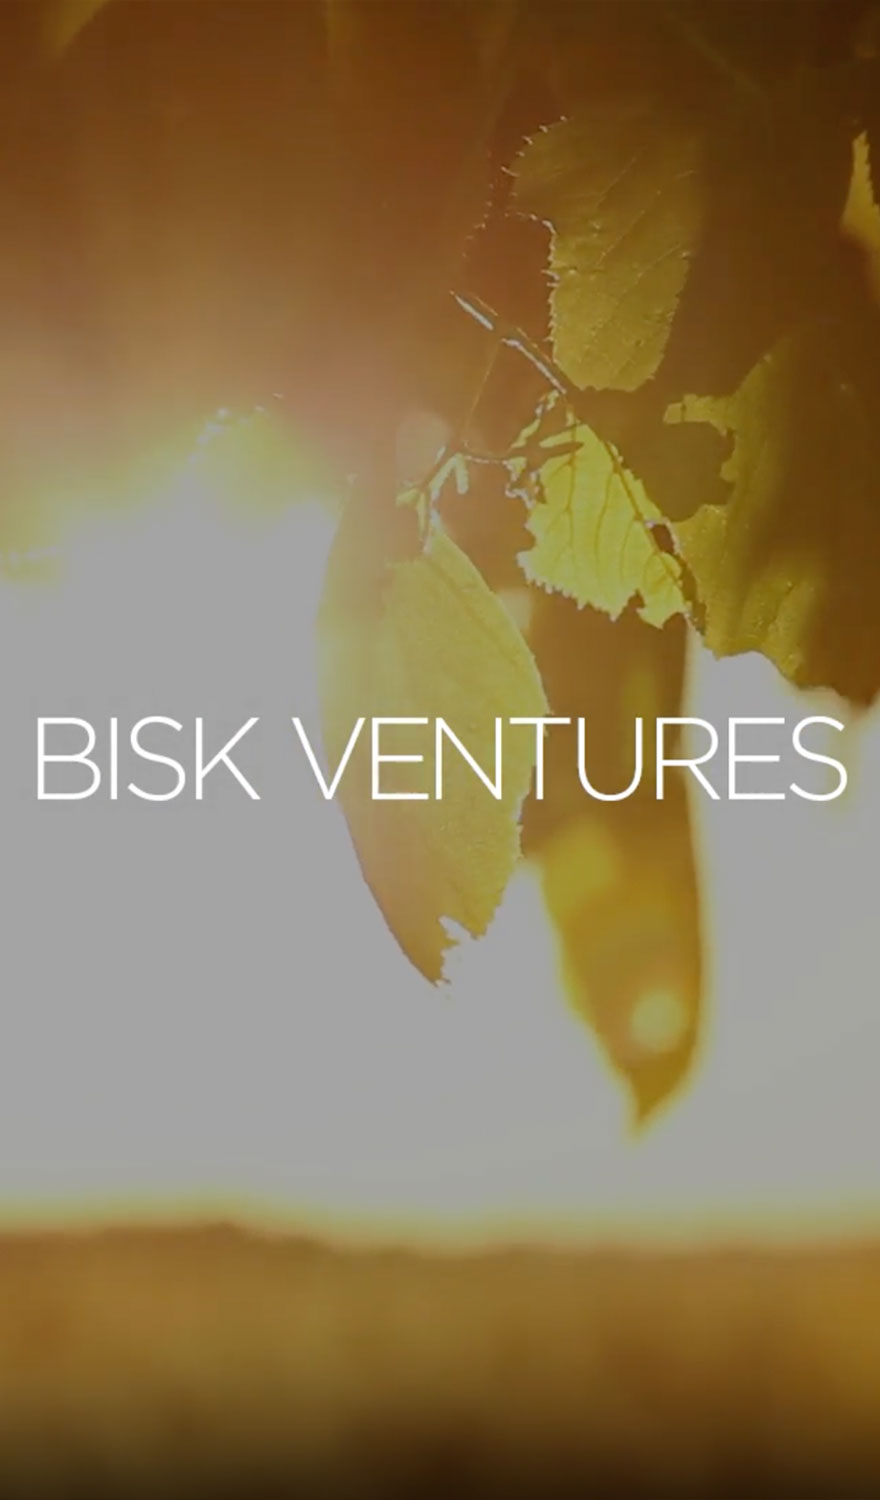 Bisk Ventures Video